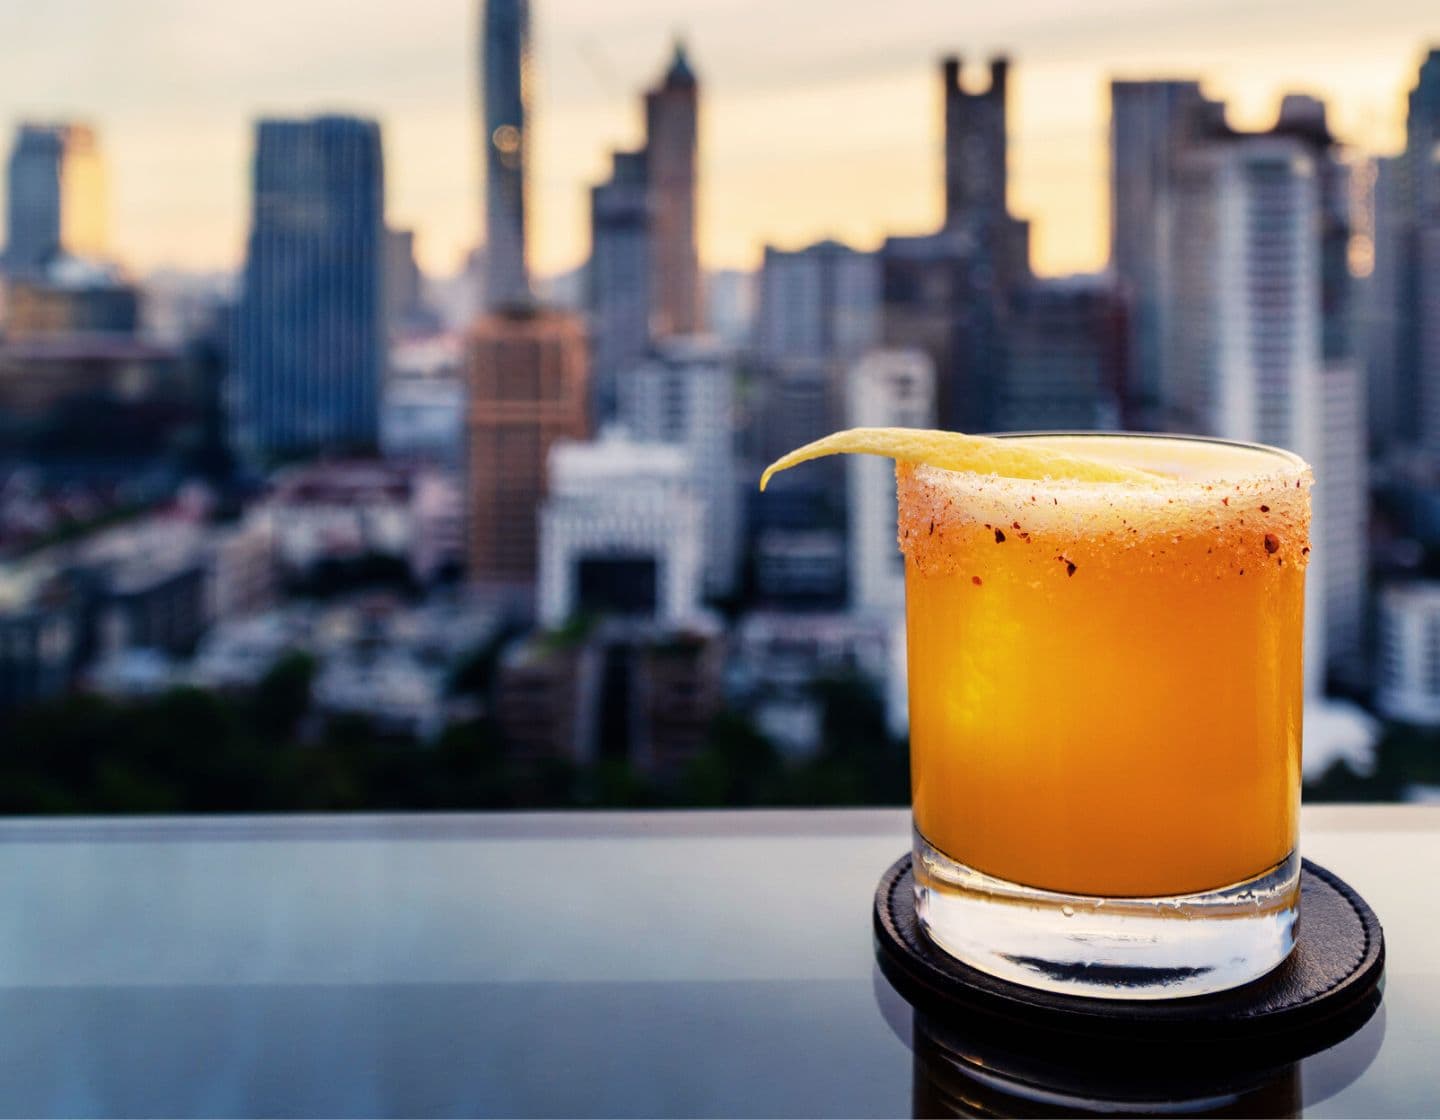 An orange cocktail garnished with lemon against a city skyline at dusk.